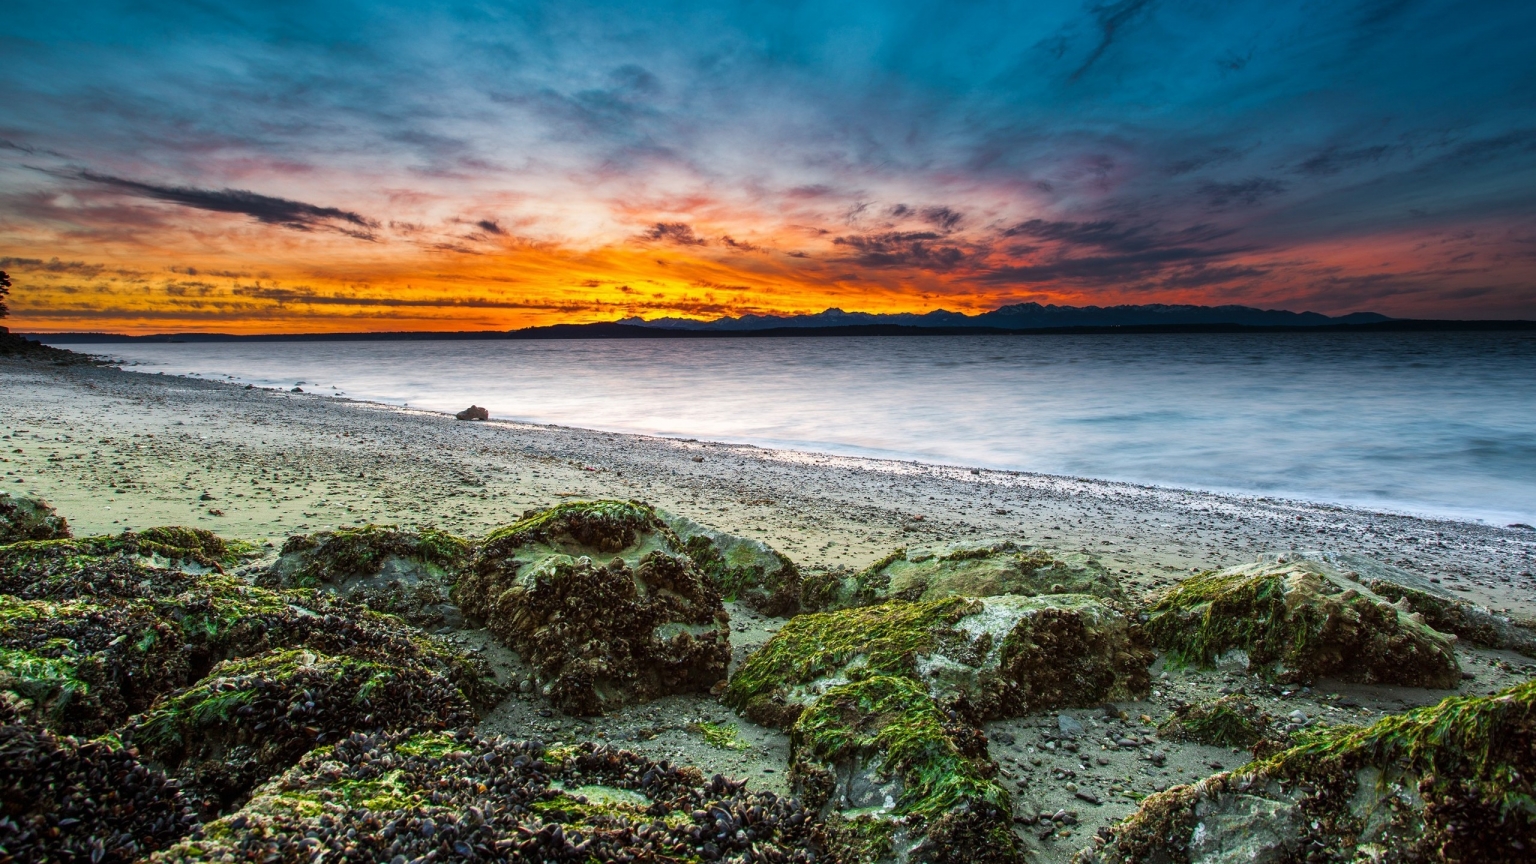 Virgin Beach Sunset for 1536 x 864 HDTV resolution